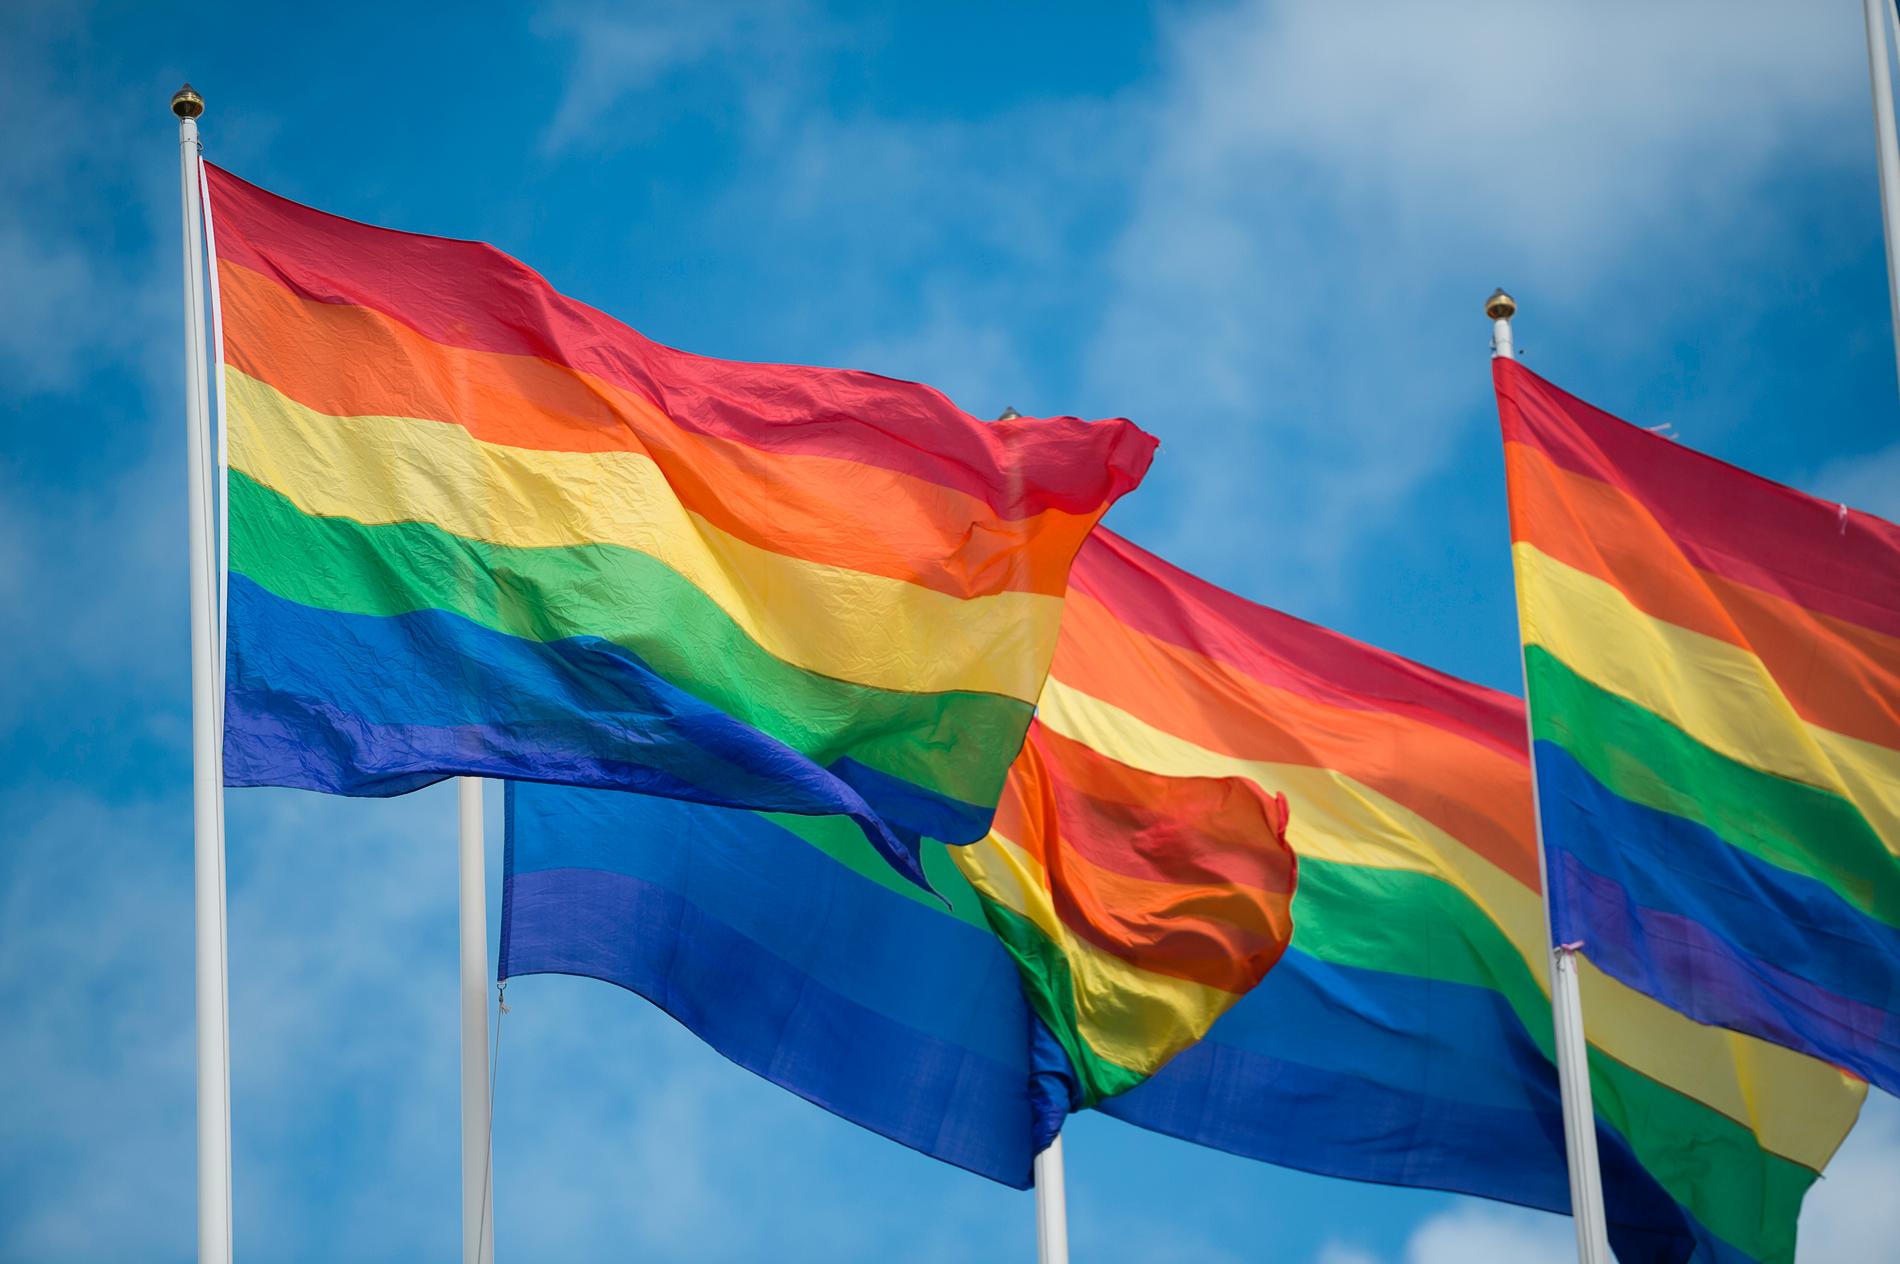 Nacka kommun målade ett övergångsställe i prideflaggans färger – något Transportstyrelsen hävdar är olagligt. Arkivbild.